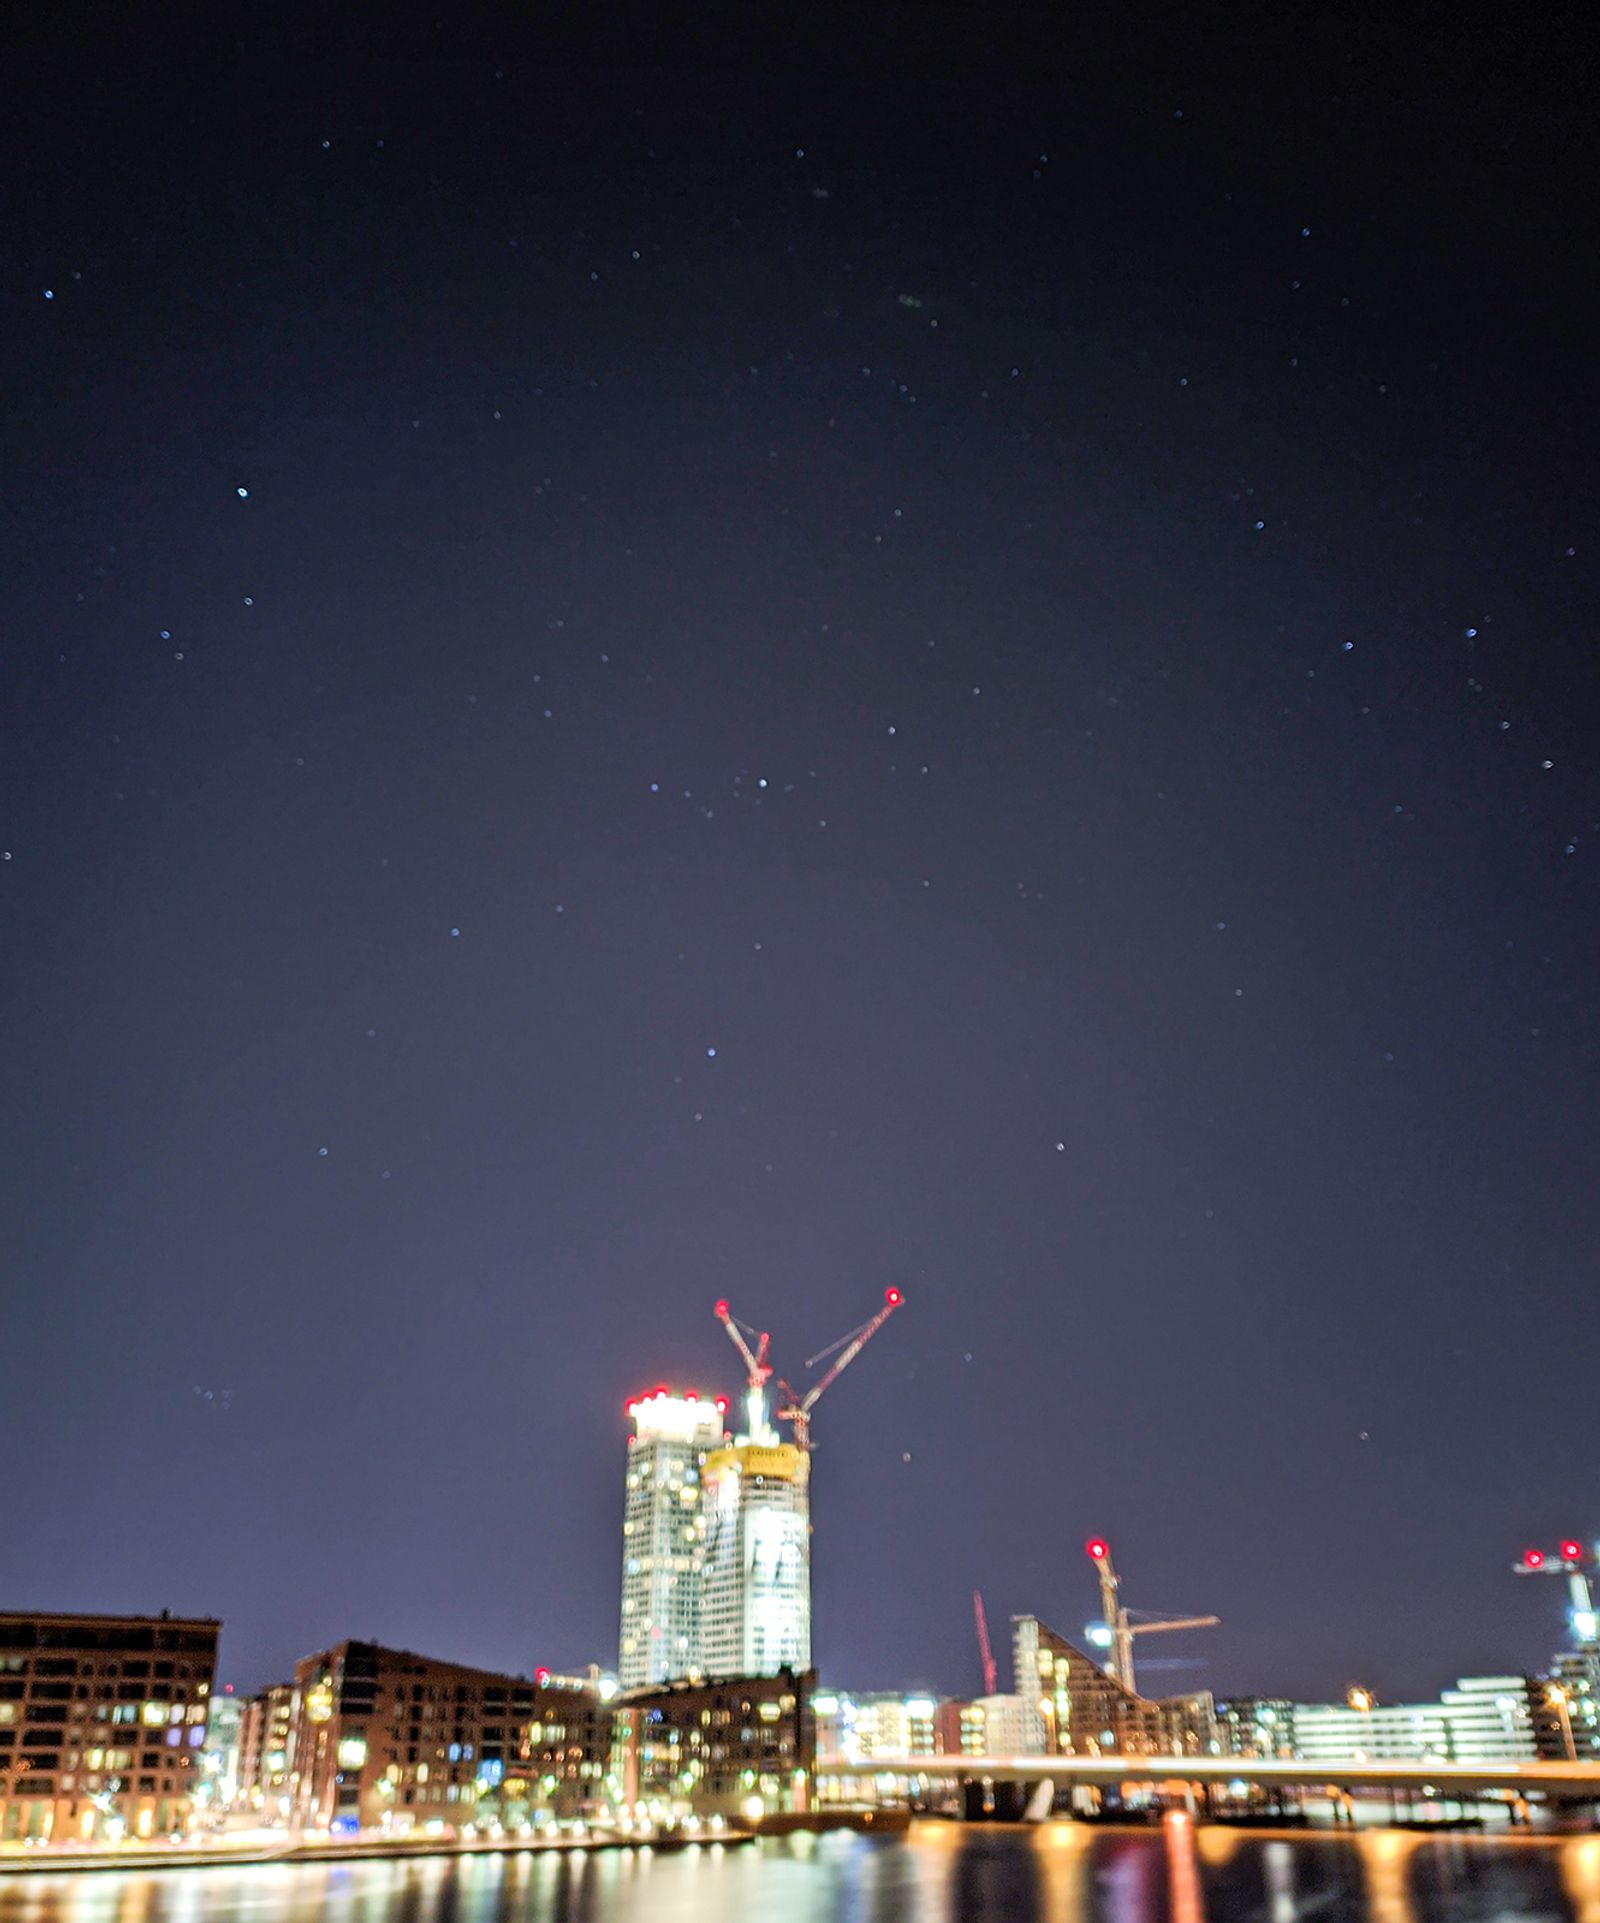 Helsingin Kalasatama kuvattu puhelimella yöllä, kuva on laadultaan huono mutta muutamat tähdet voi erottaa